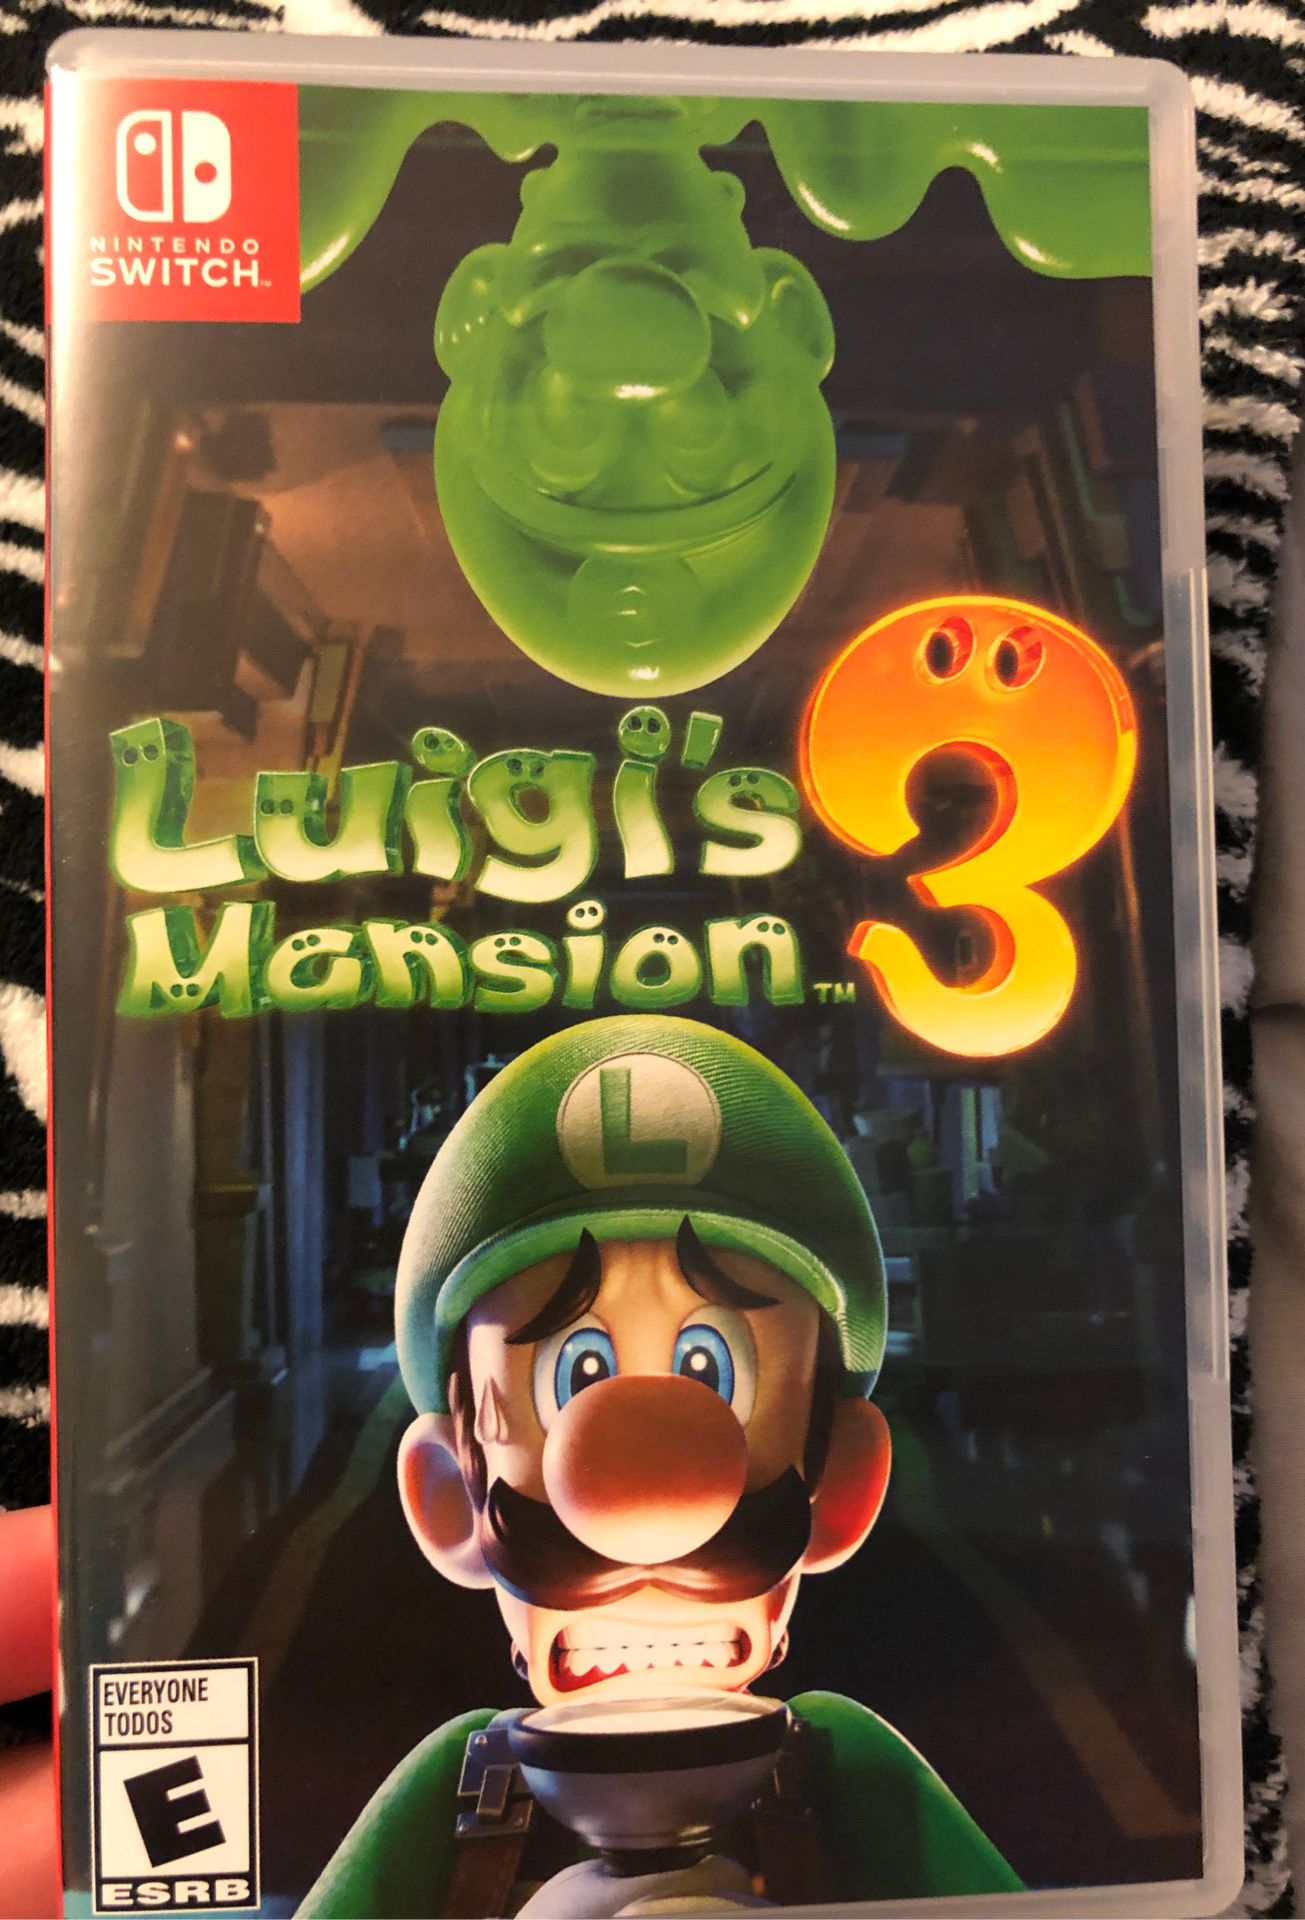 Luigi’s mansion